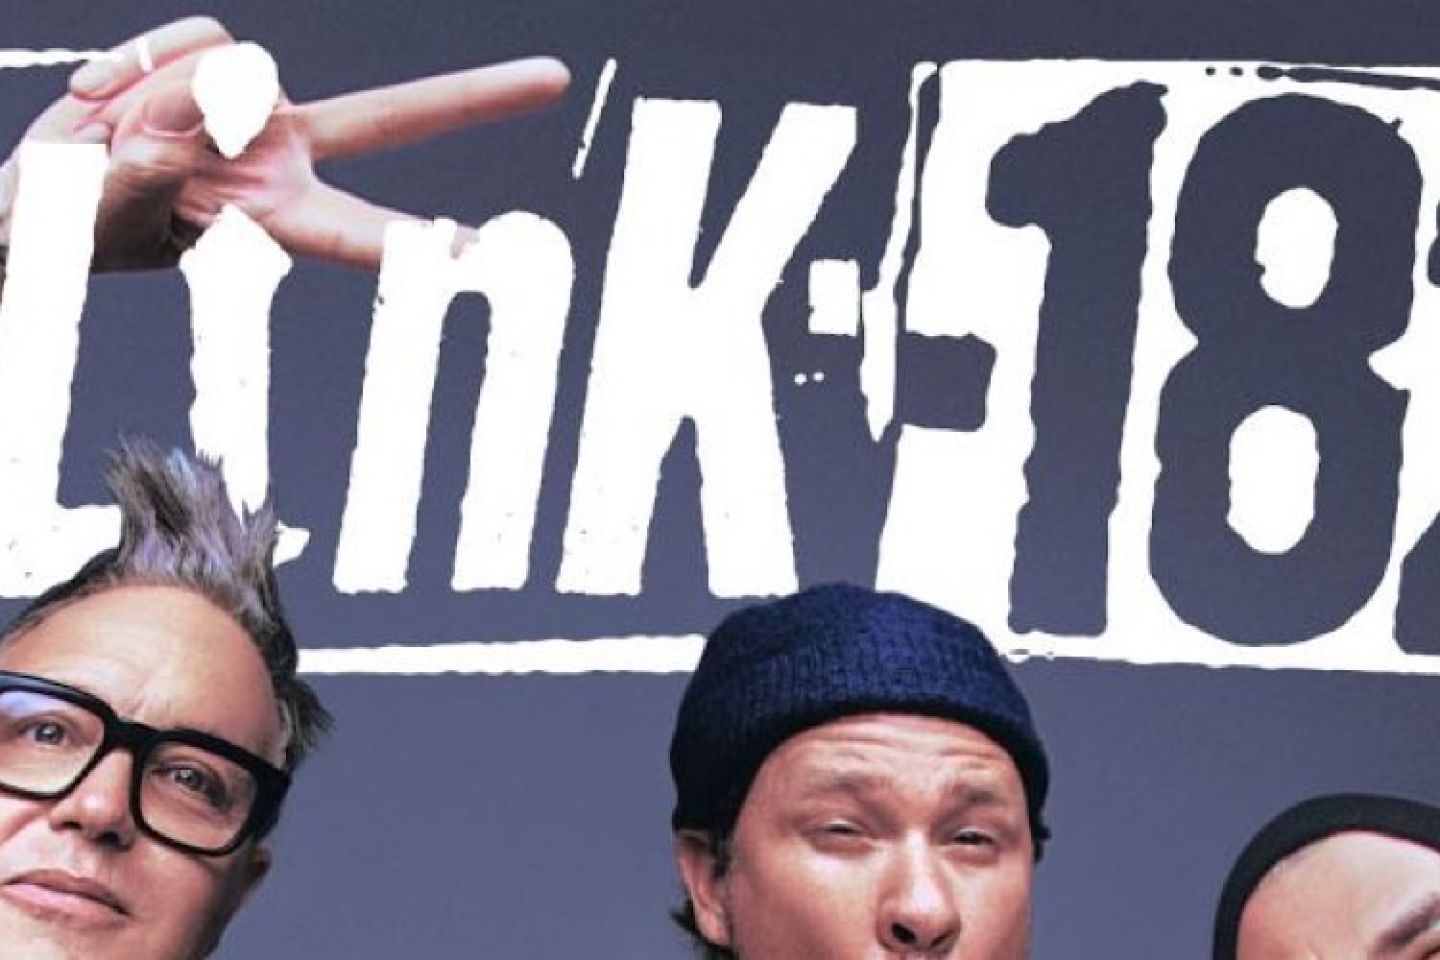 blink-182: è uscito oggi in digitale il nuovo singolo “EDGING”, in rotazione radiofonica da venerdì 21 ottobre. Anticipa l’attesissimo nuovo album in uscita nel 2023 e da oggi in pre-order!